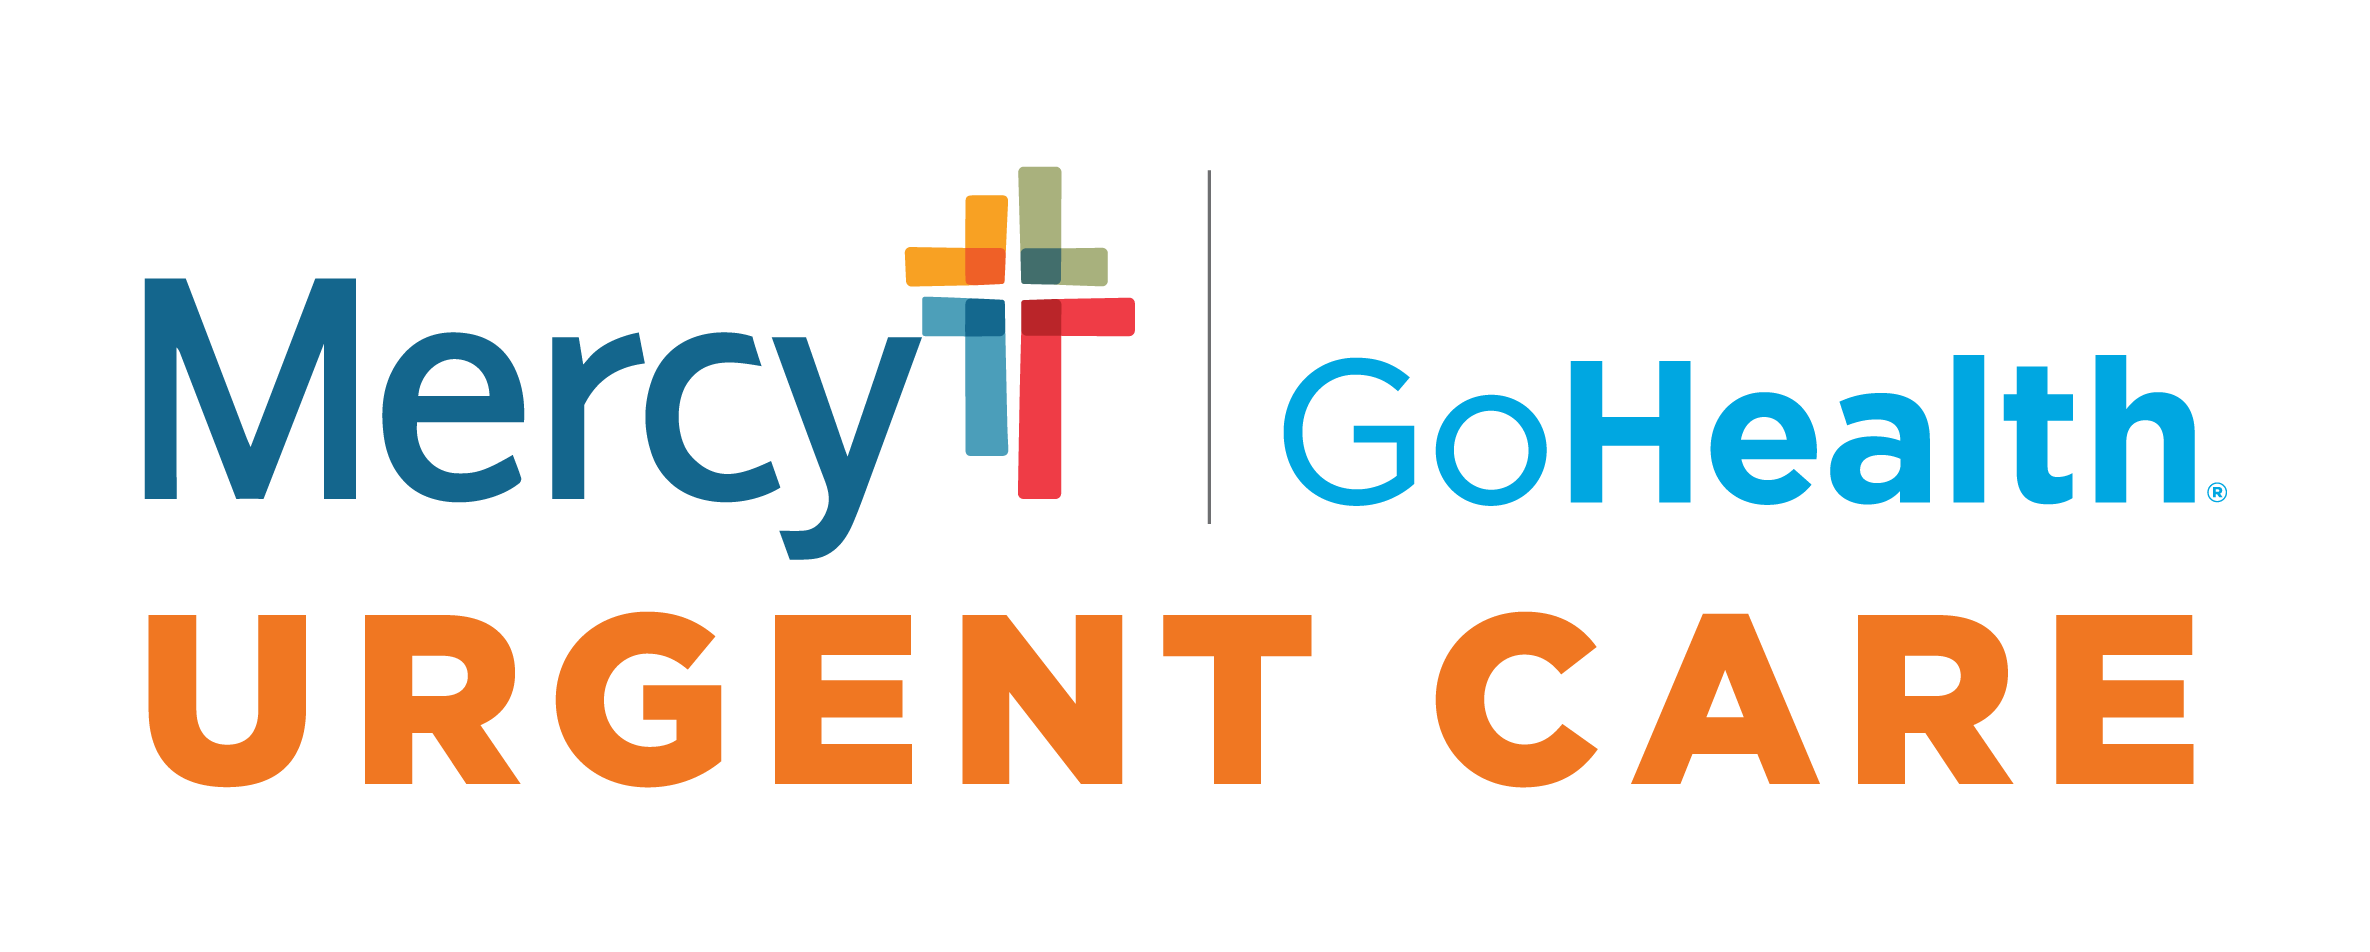 Mercy-GoHealth Urgent Care - Nw Oklahoma City Logo